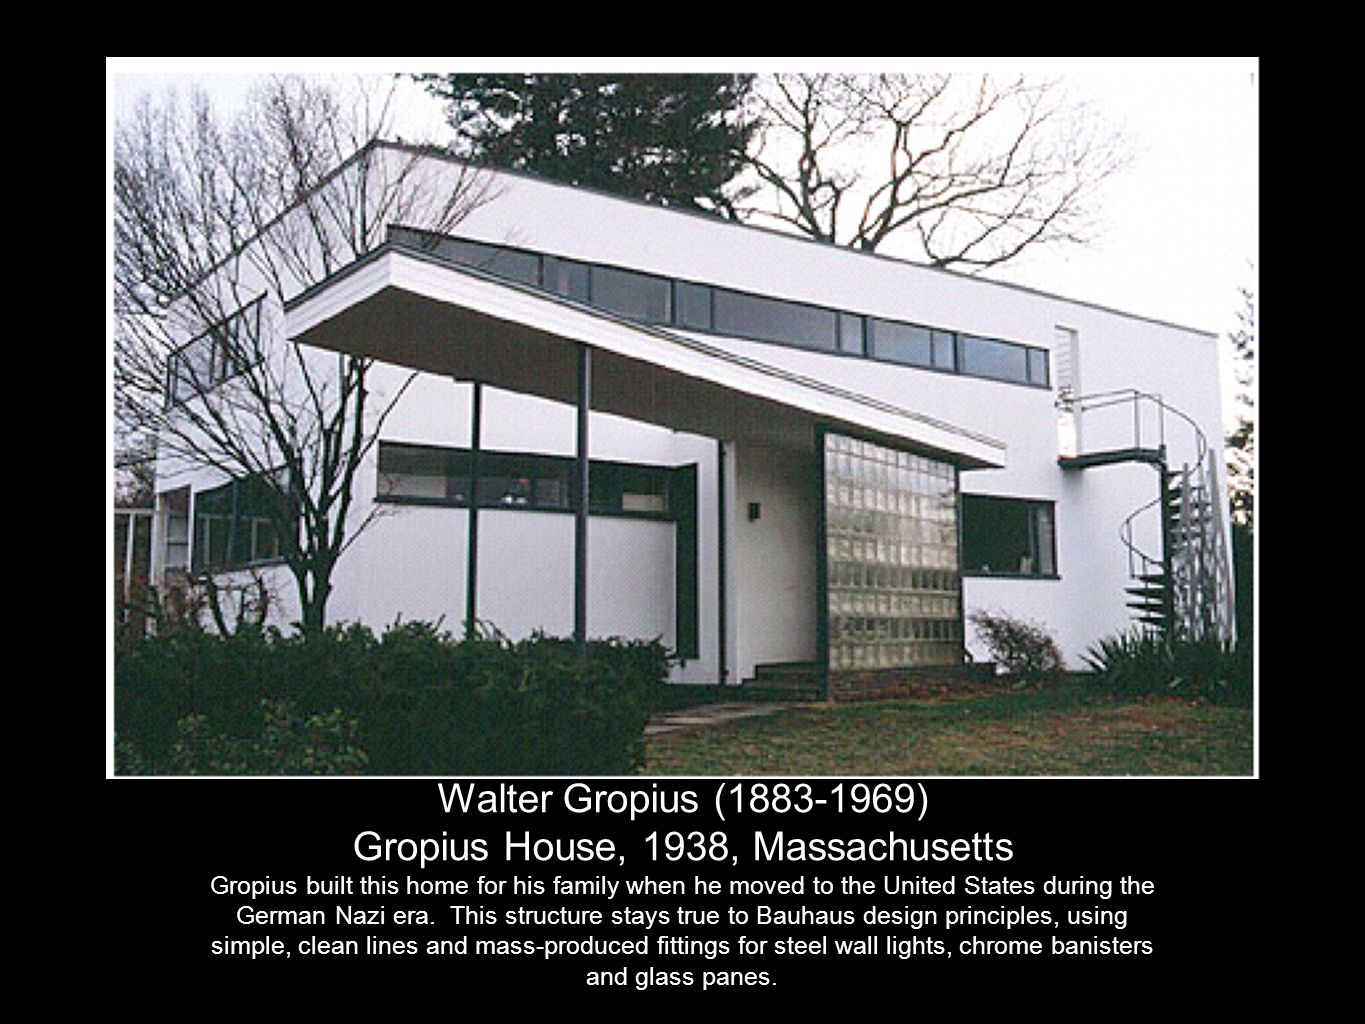 Gropius House, 1938, Massachusetts